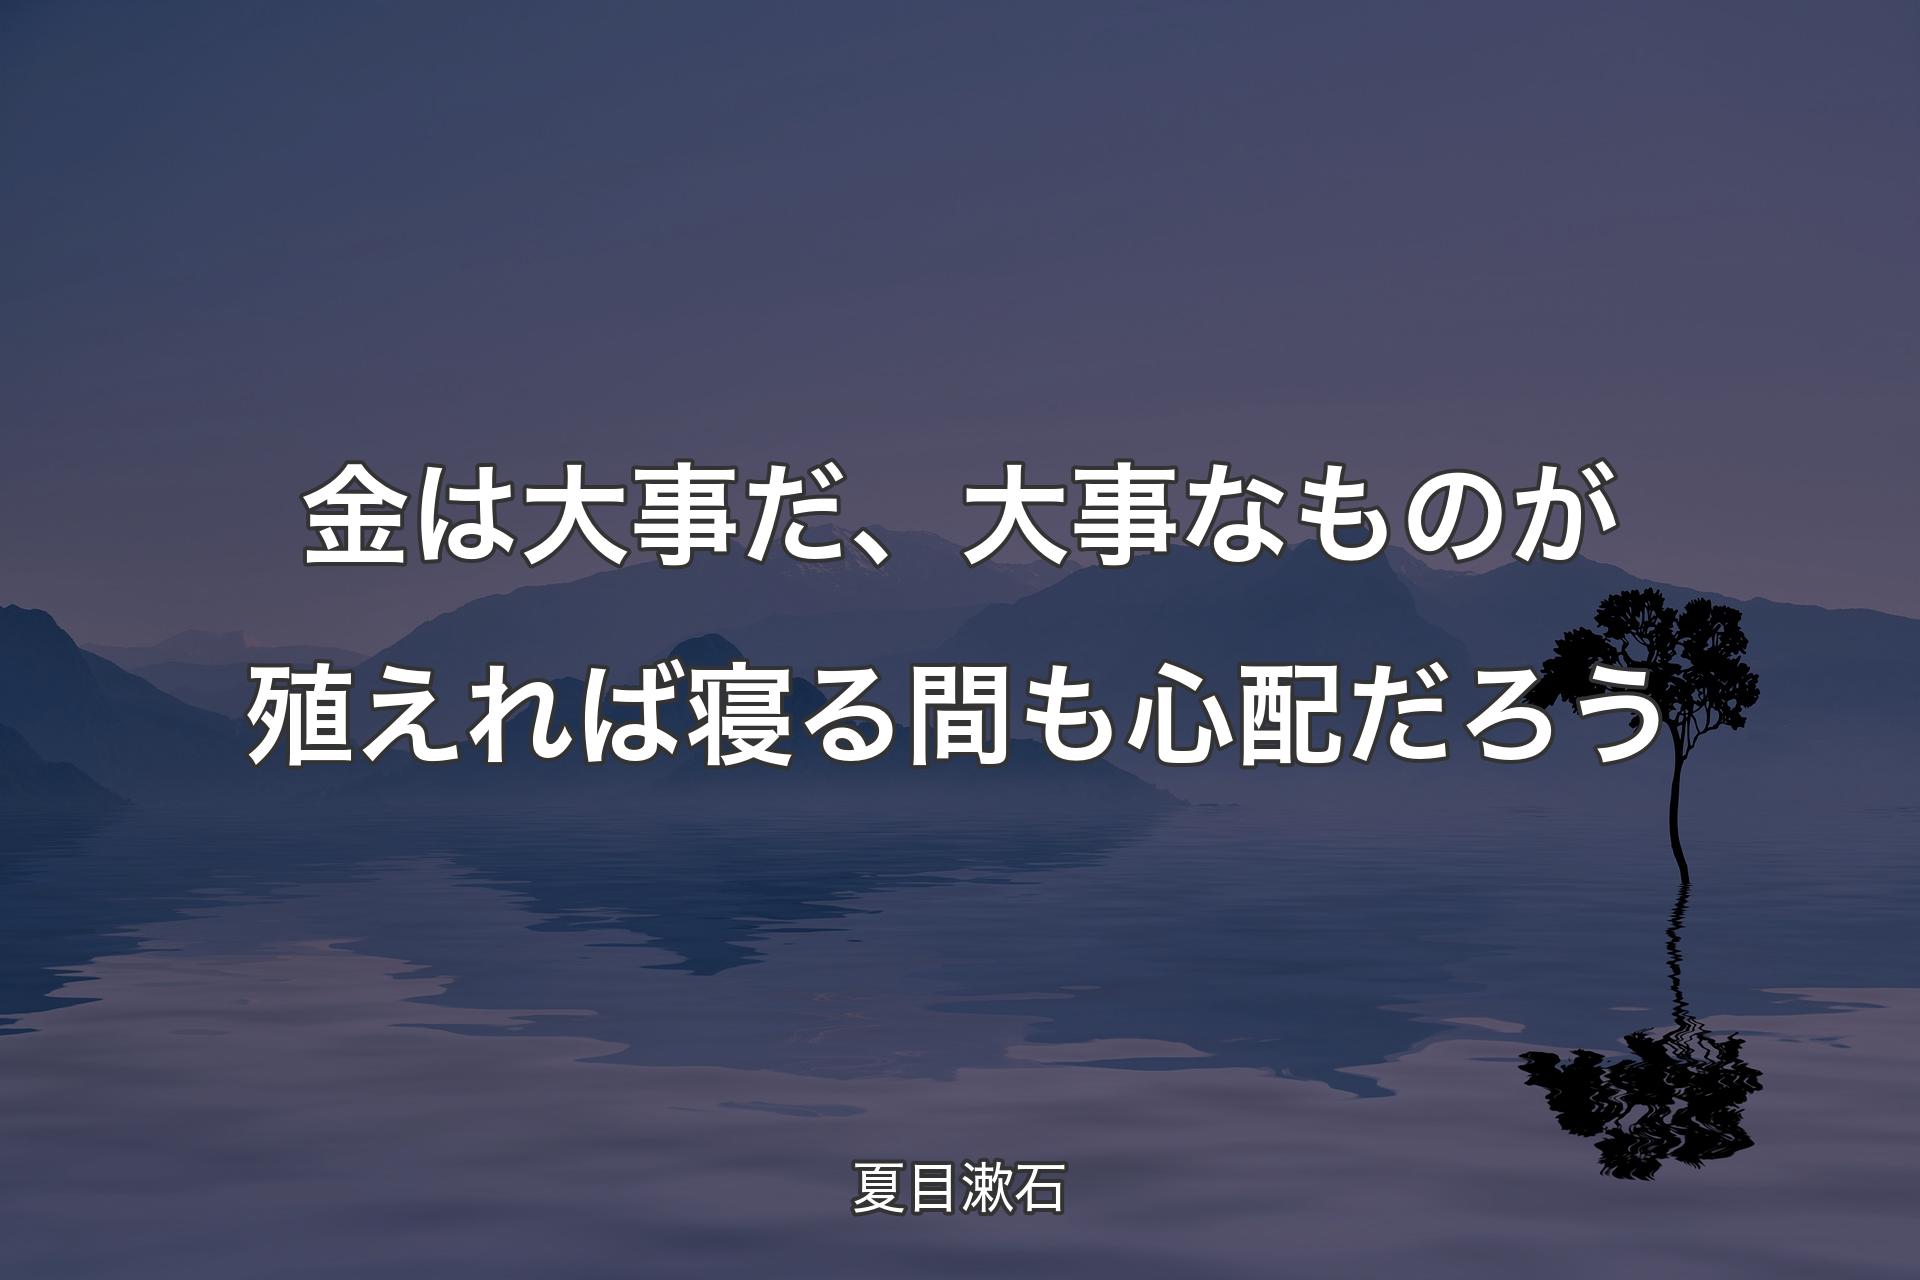 【背景4】金は大事だ、大事なものが殖えれば寝る間も心配だろう - 夏目漱石